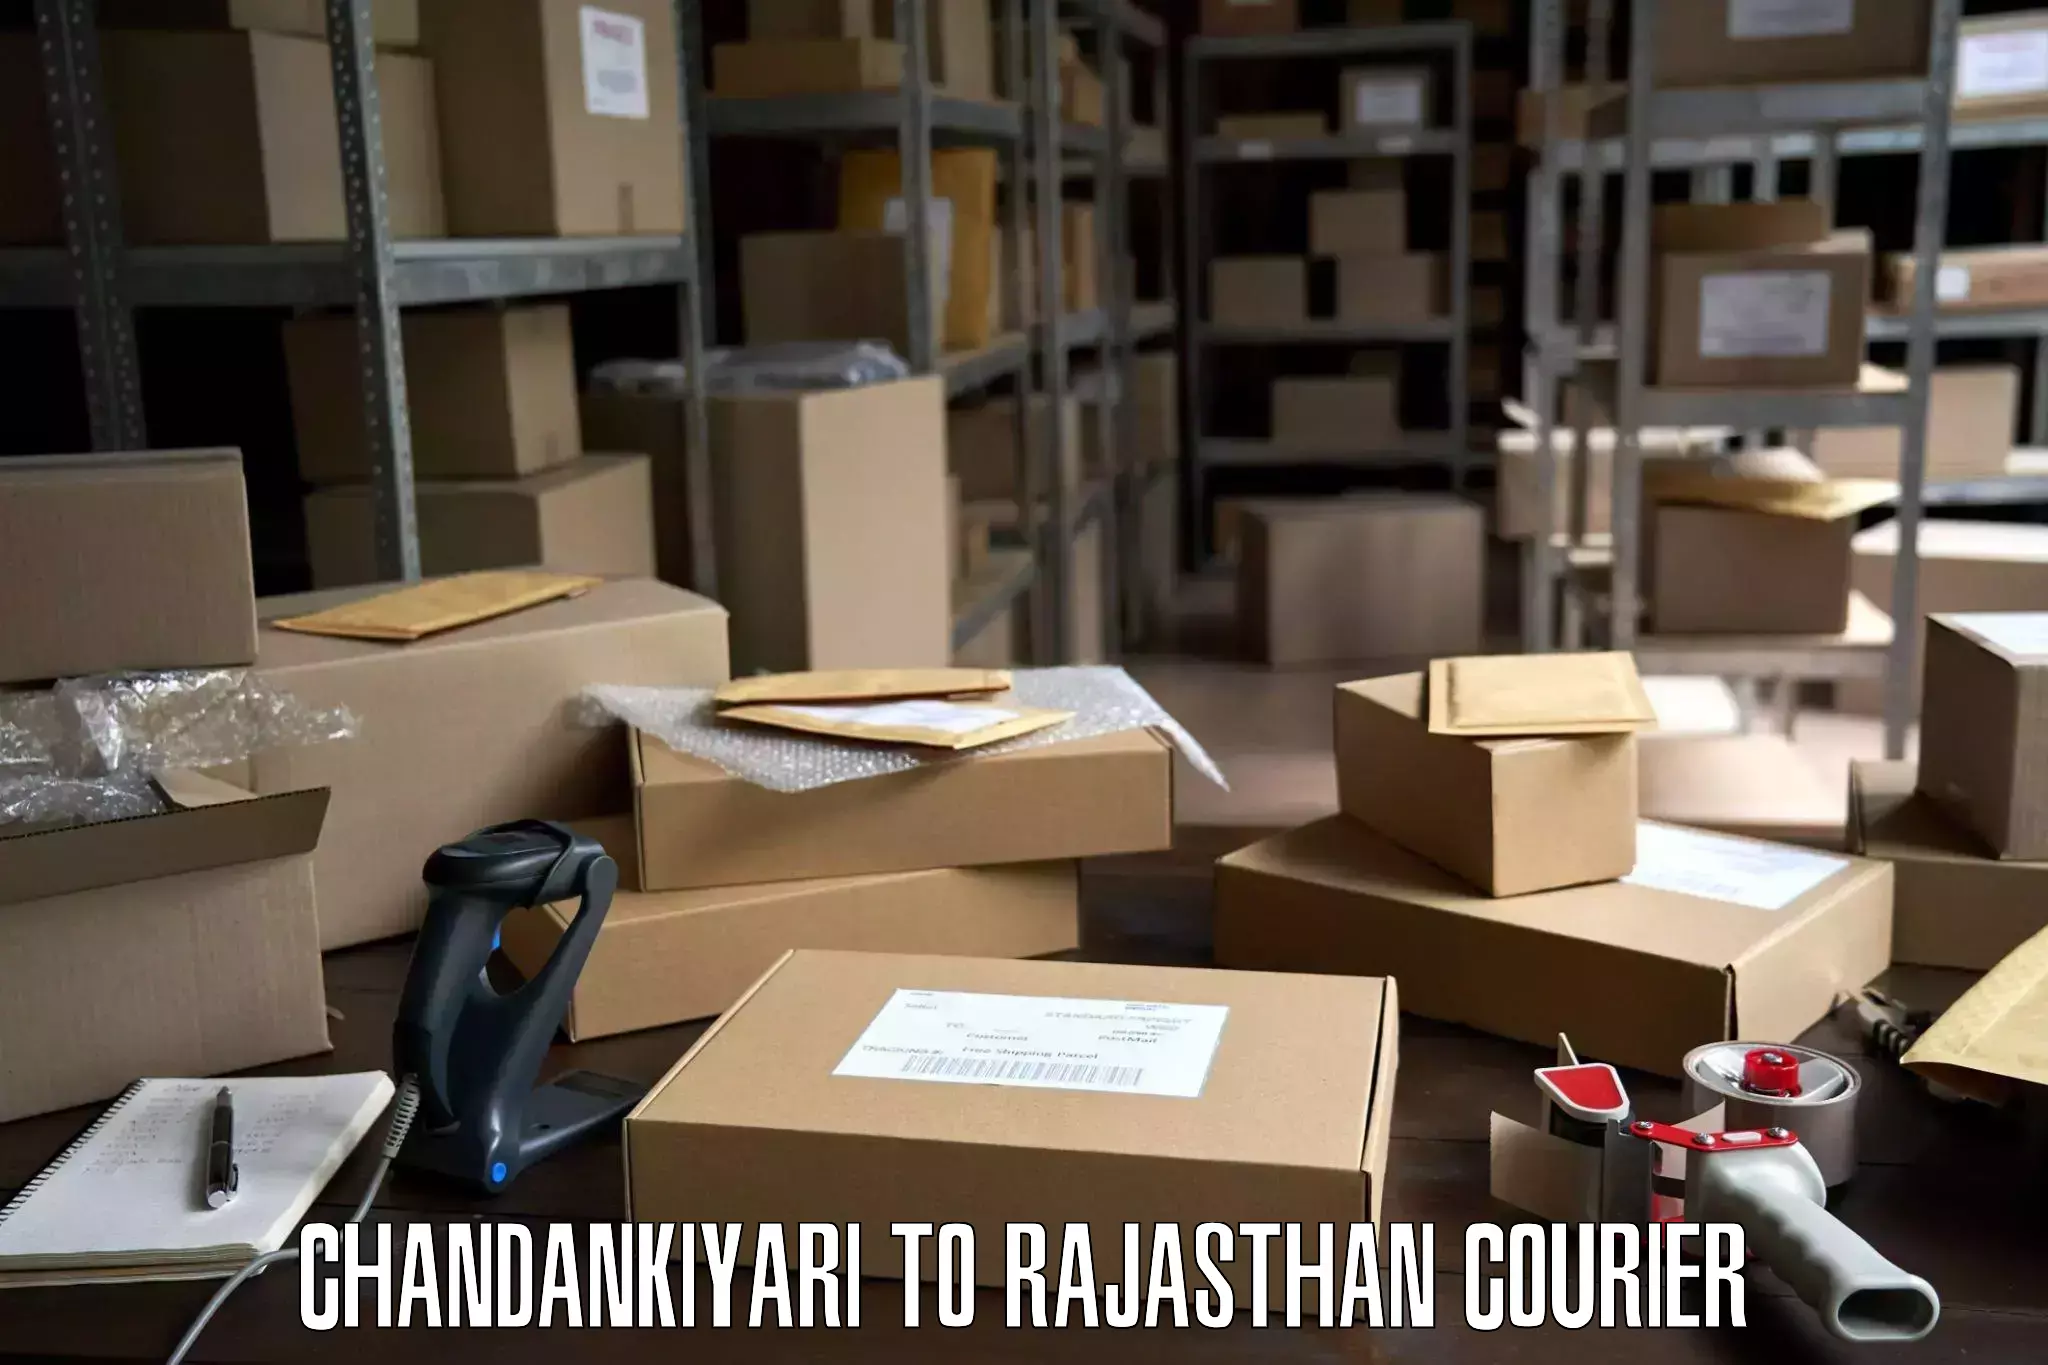 Furniture moving experts Chandankiyari to Viratnagar